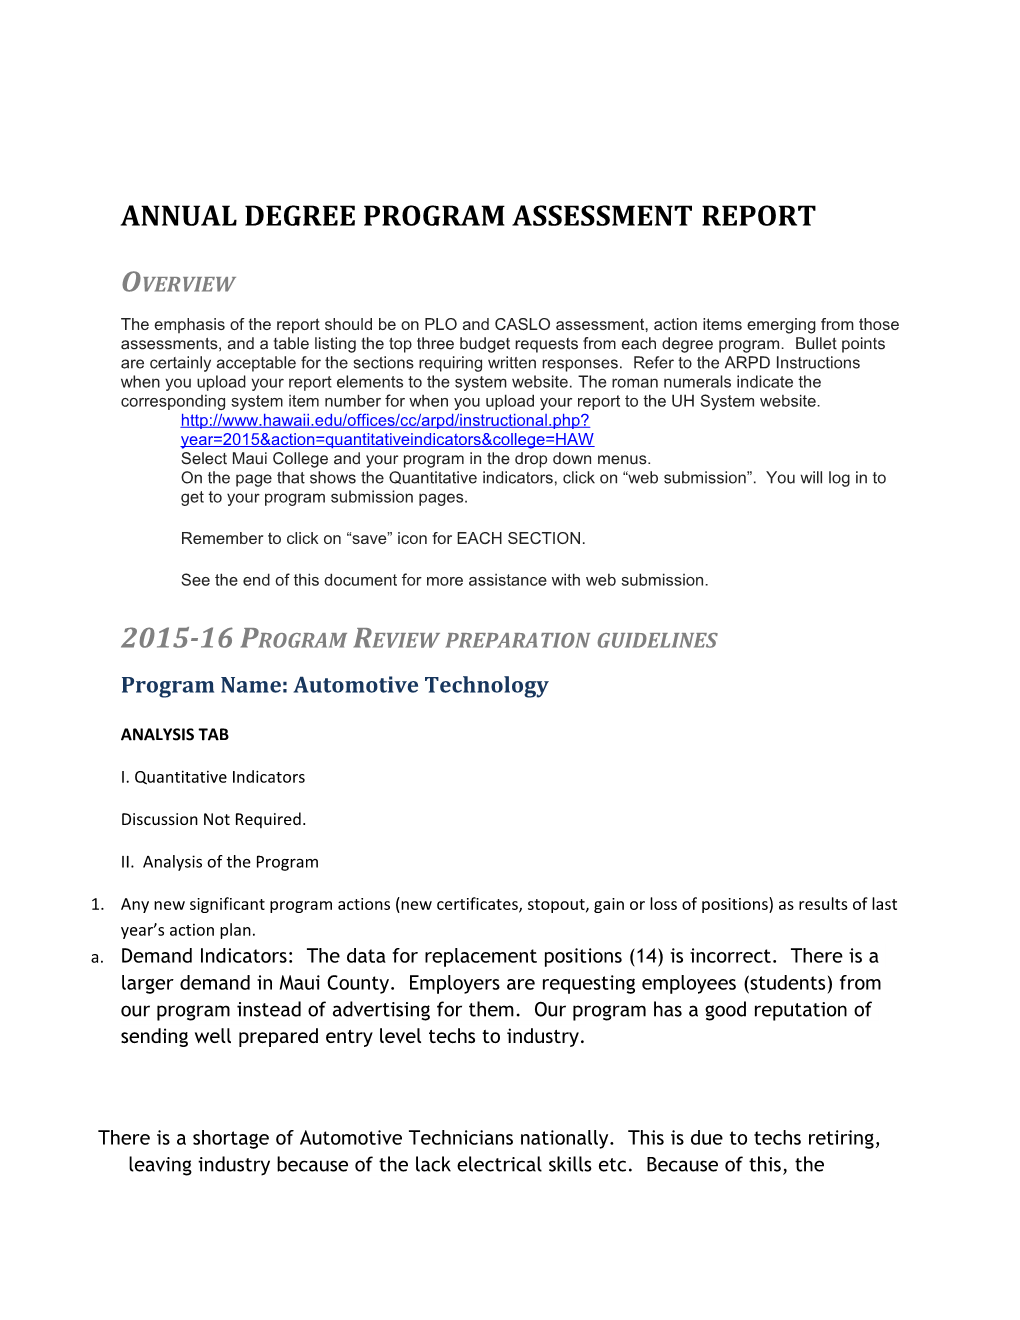 Annual Degree Program Assessment Report s2